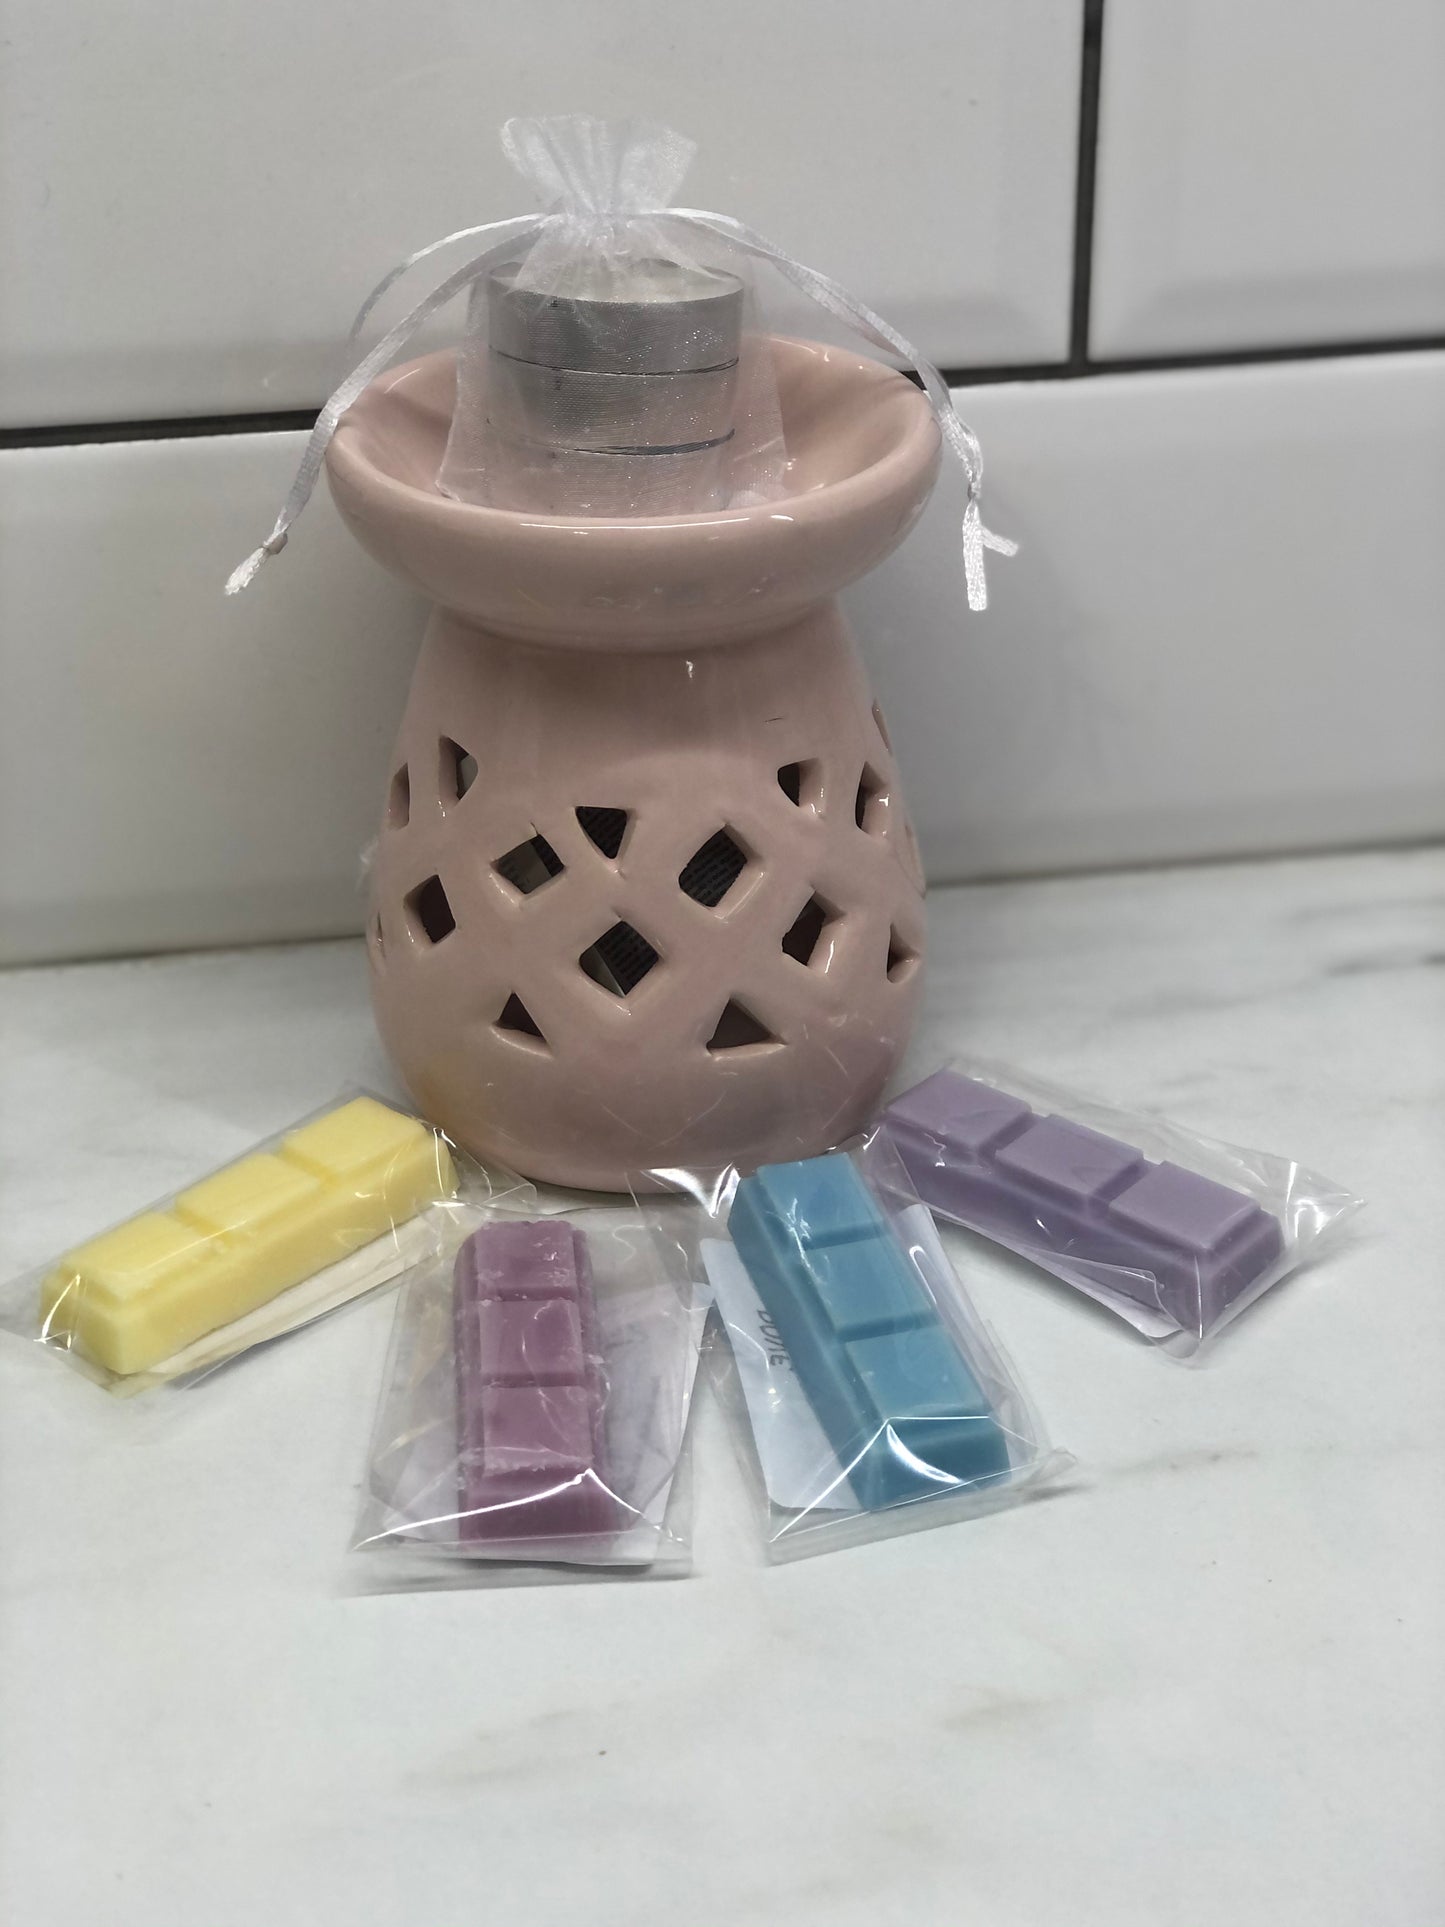 Starter pack (ceramic burner, 4 sample bars, 3 tea lights)